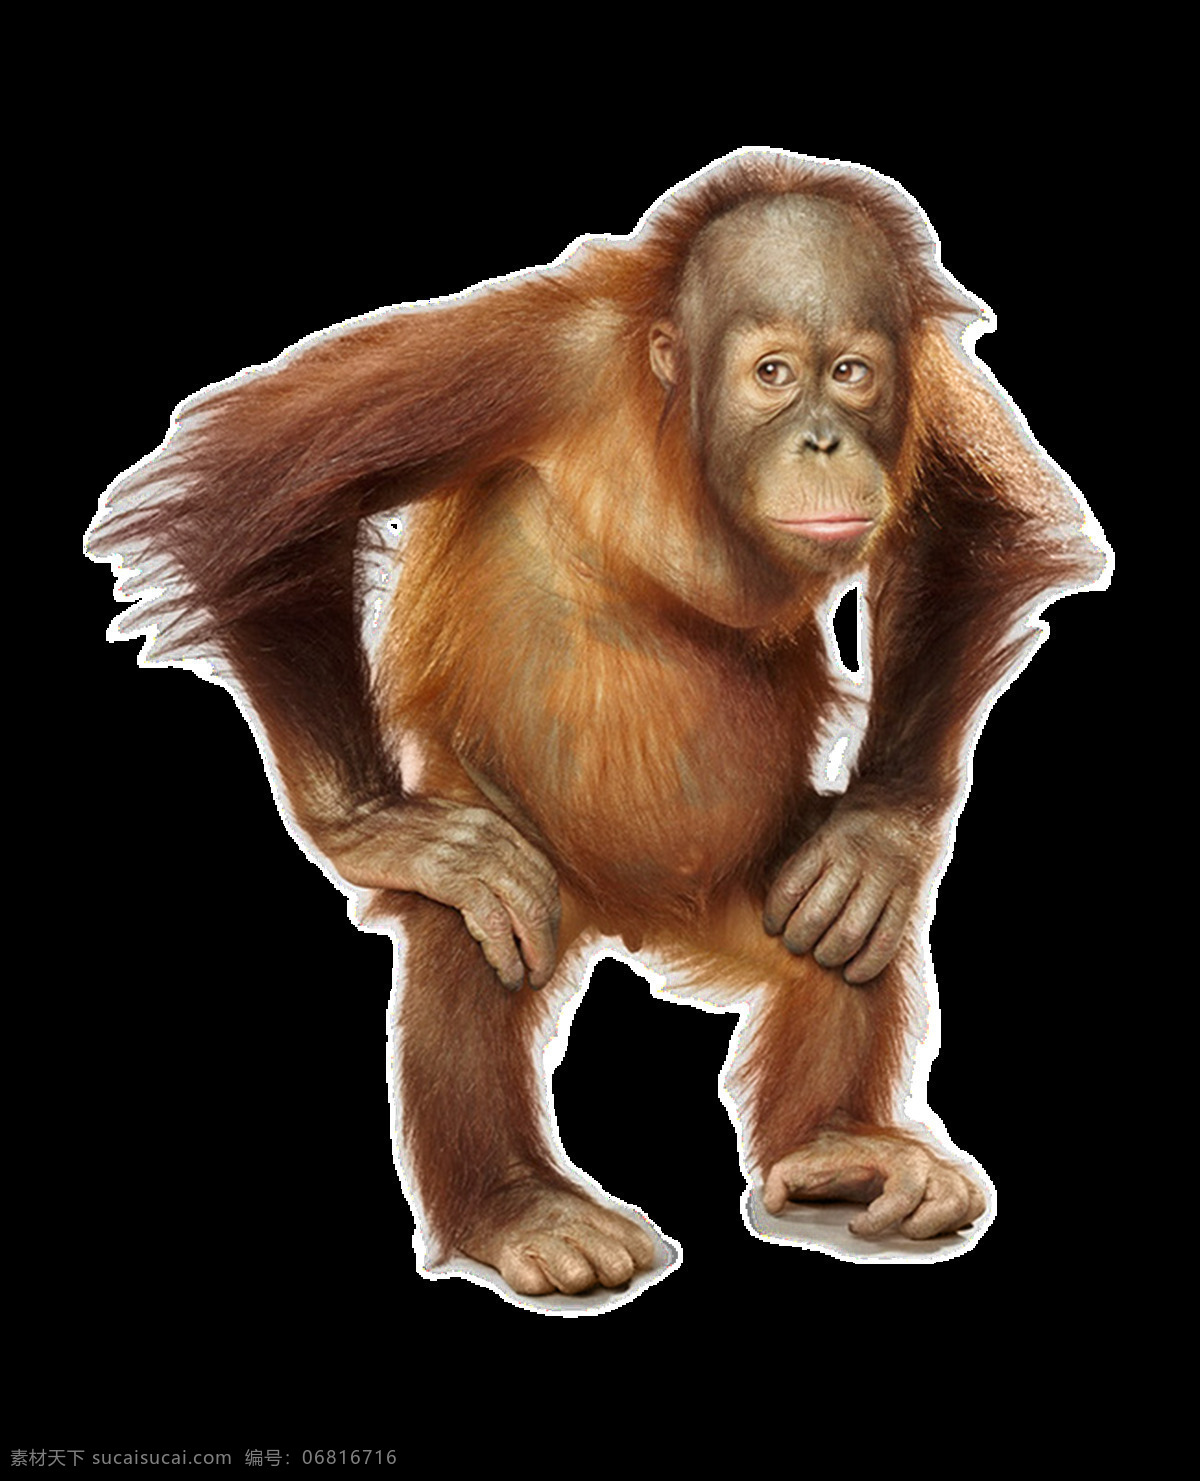 猴子图片 猴子 狒狒 猩猩 猴 猿猴 长臂猿 猕猴 大猩猩 png图 透明图 免扣图 透明背景 透明底 抠图 生物世界 野生动物